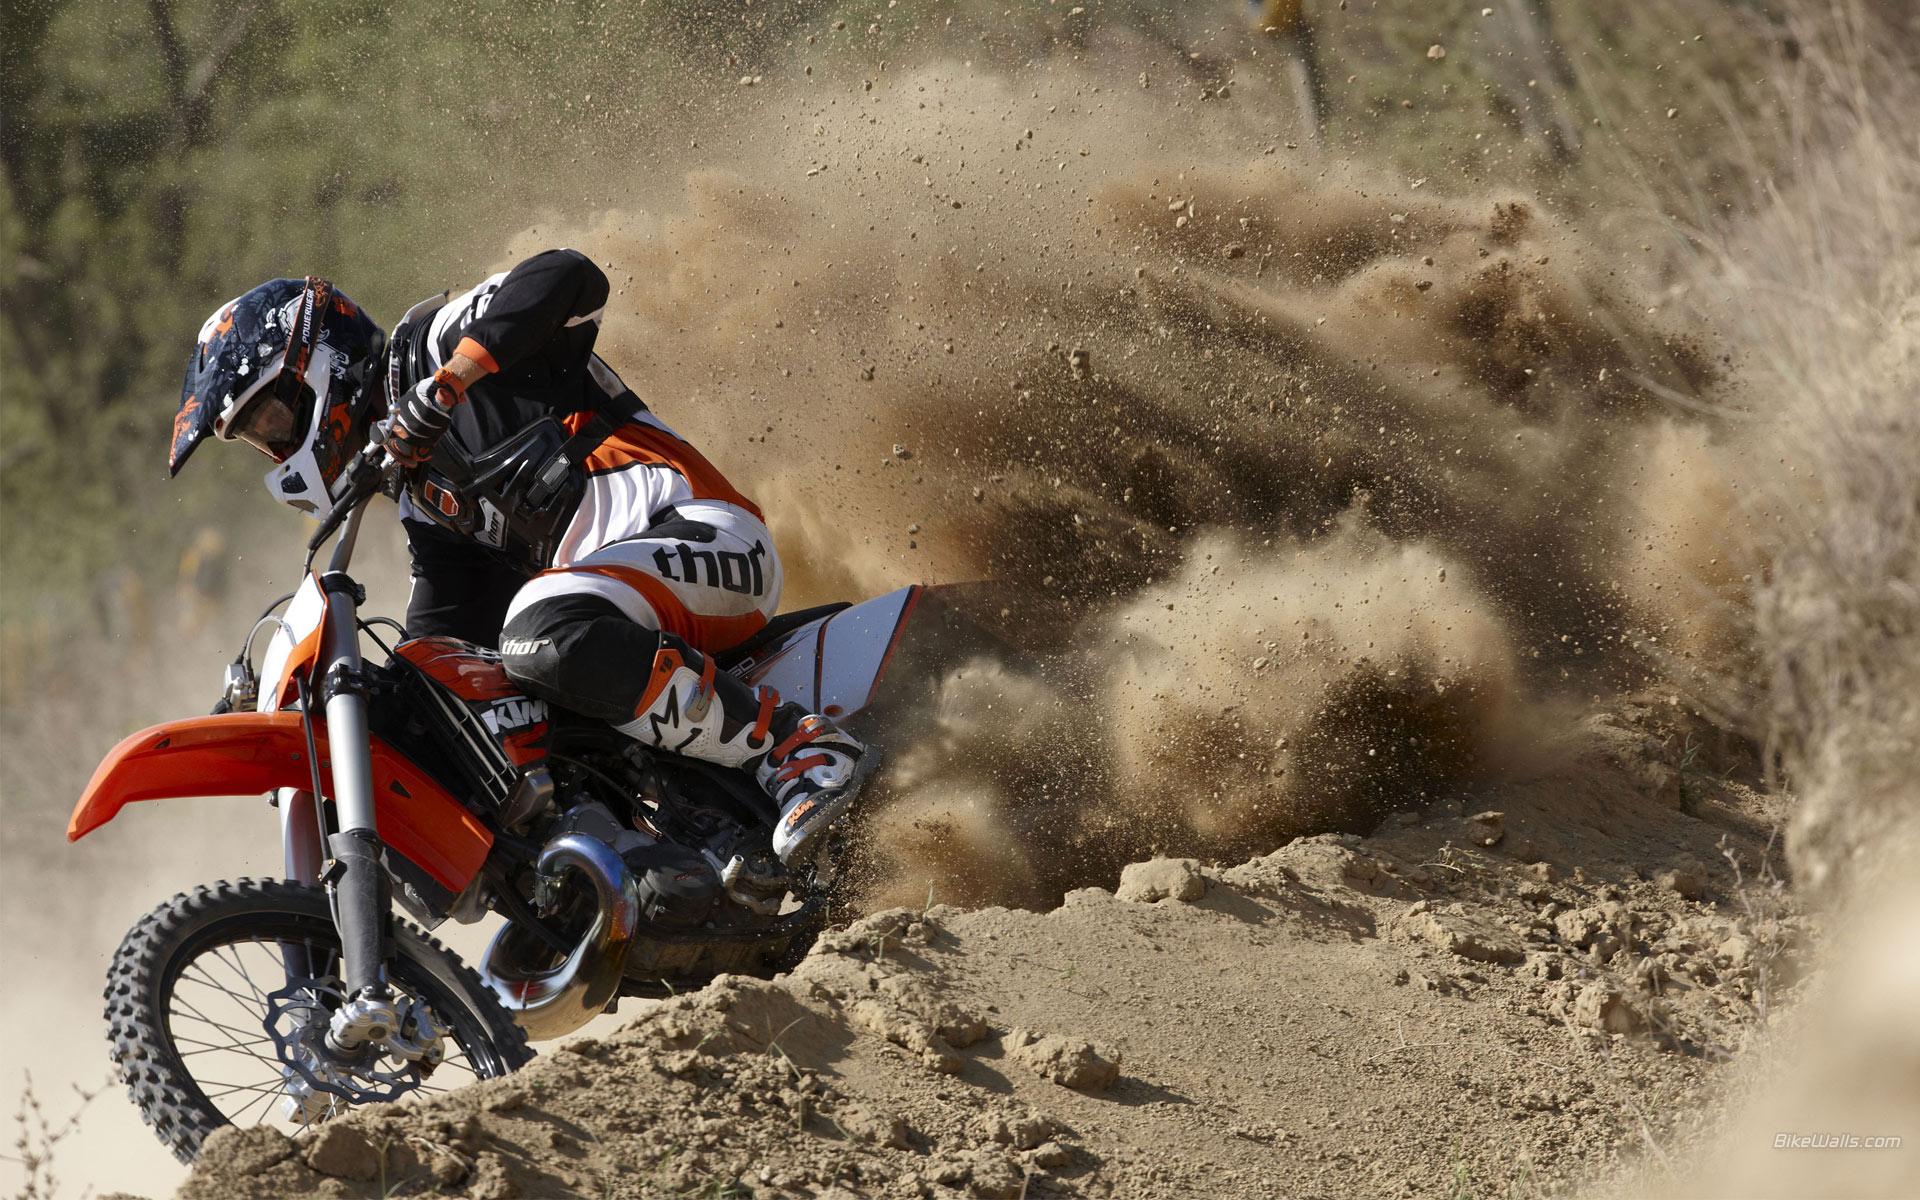 Dirt dirt bikes motocross motorbikes racing ktm 250 wallpaper